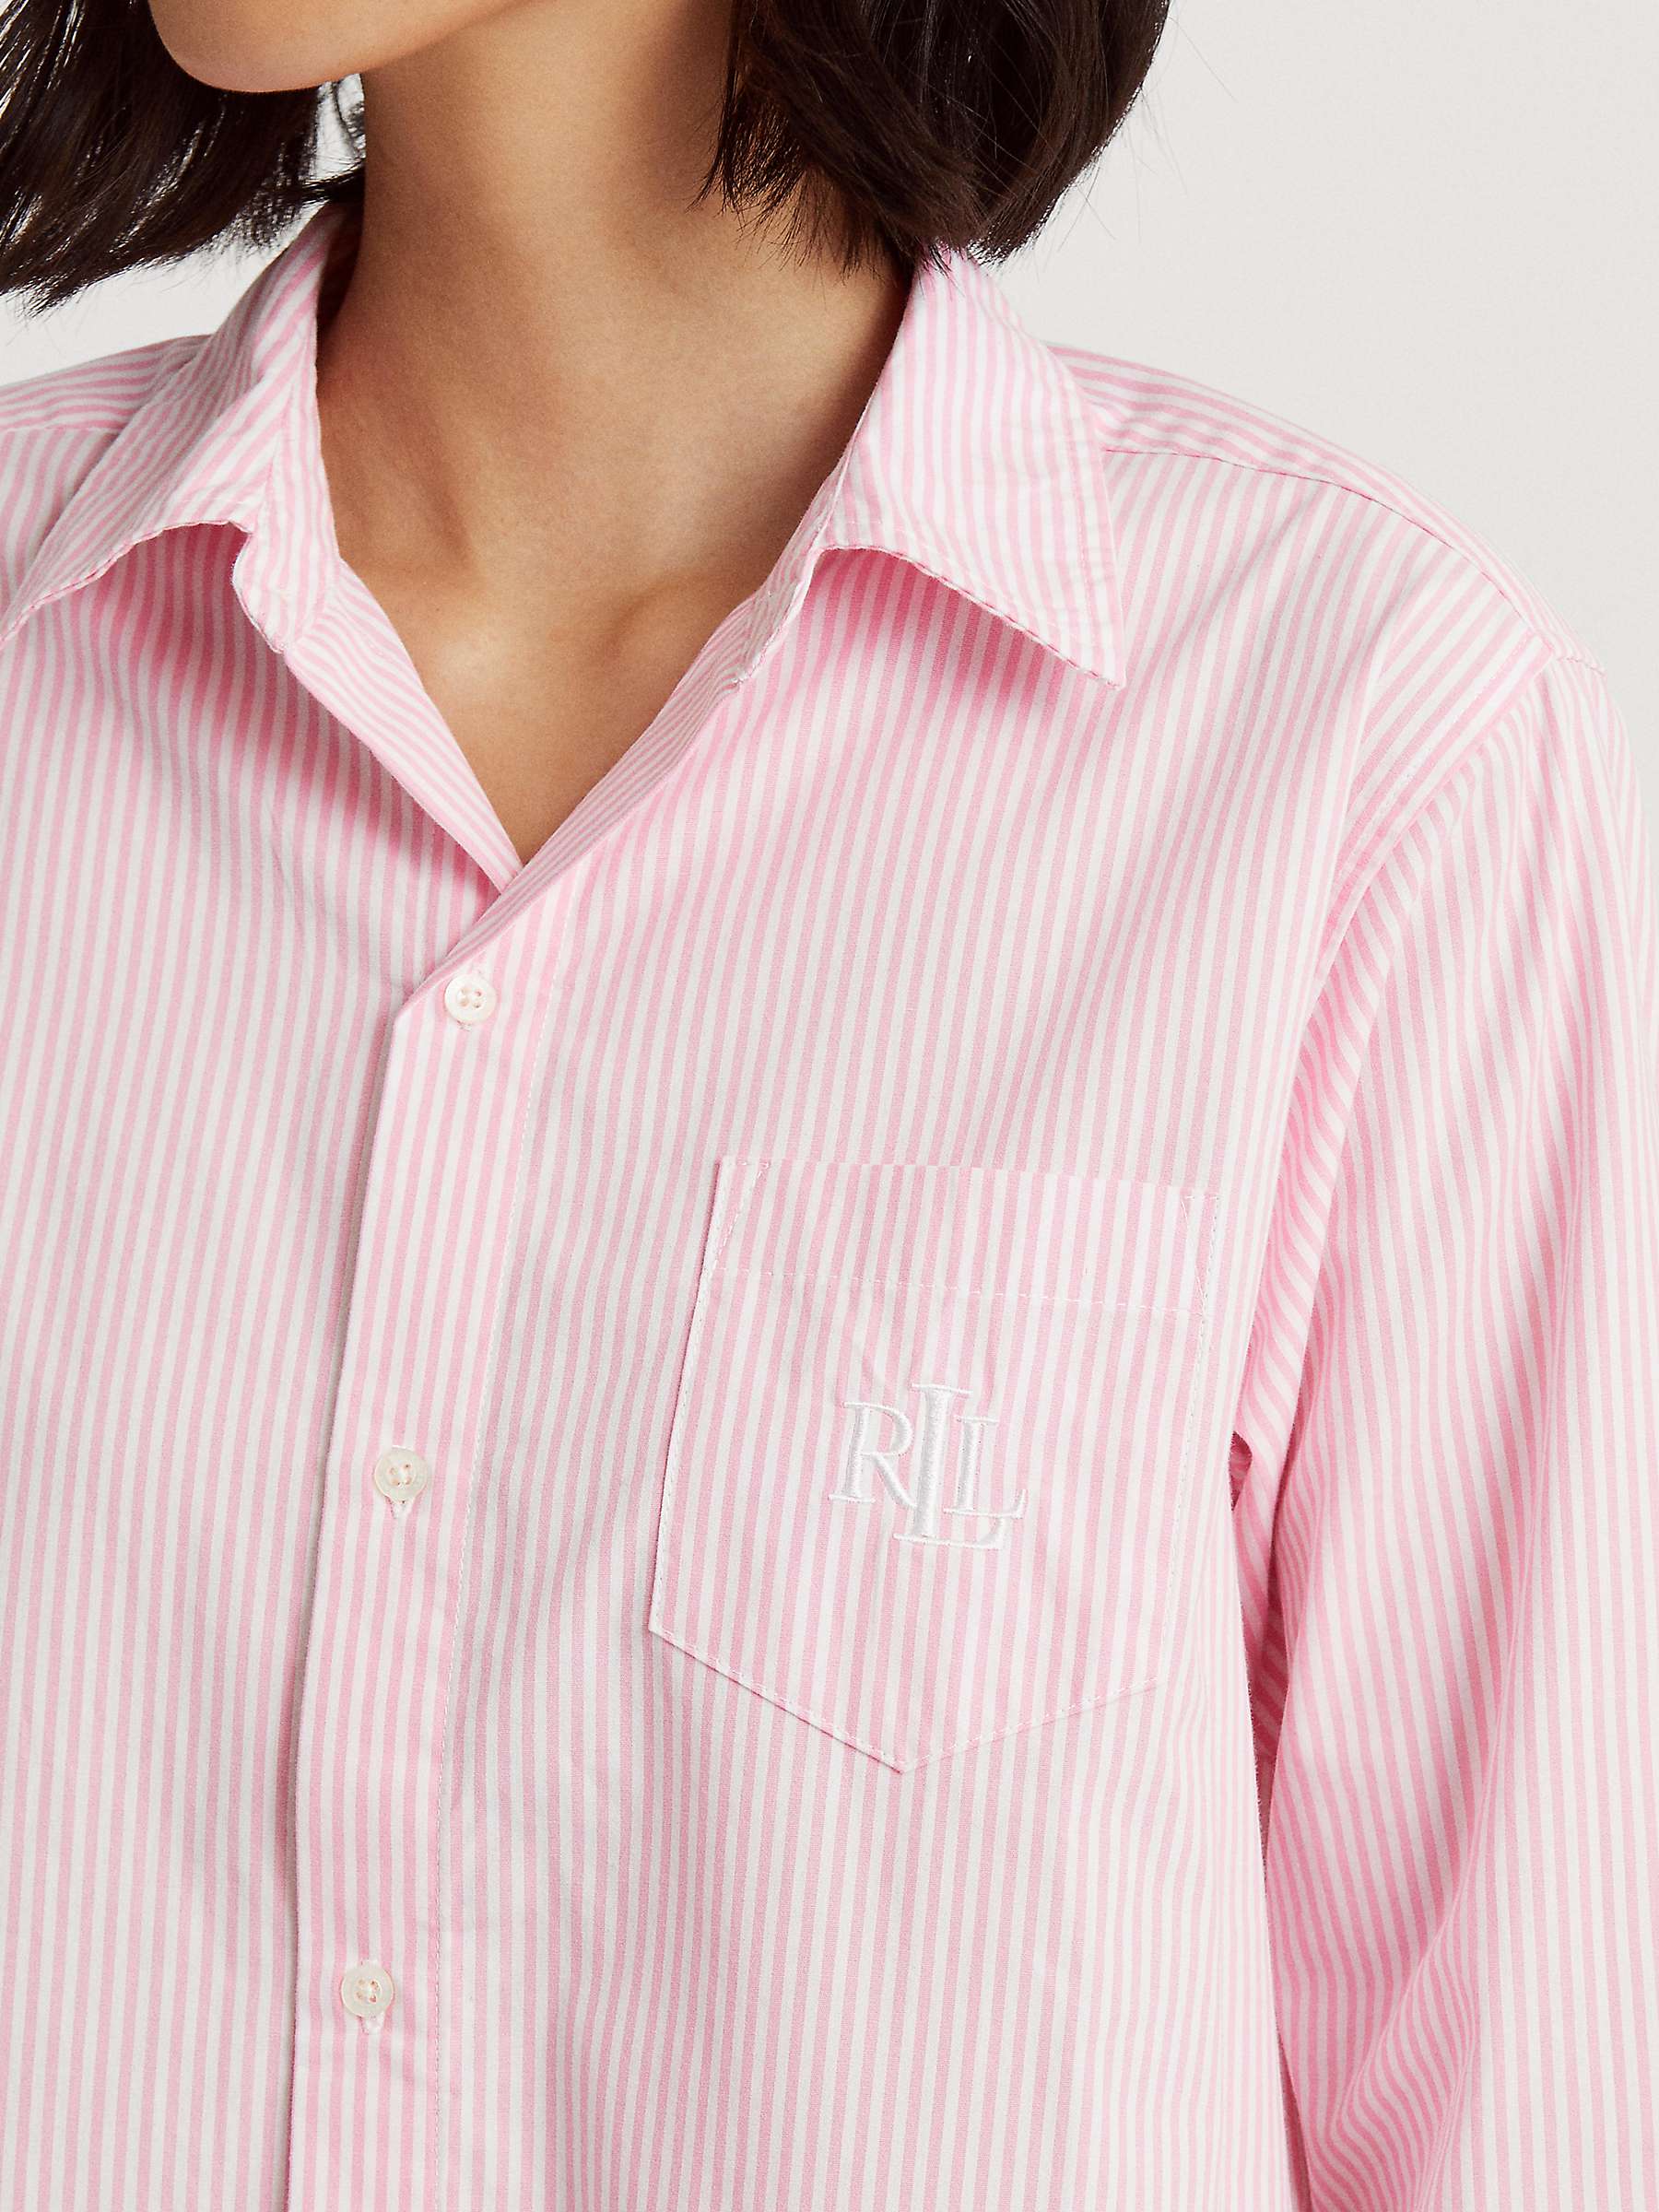 Buy Lauren Ralph Lauren Long Sleeve Stripe Nightshirt, Pink Online at johnlewis.com